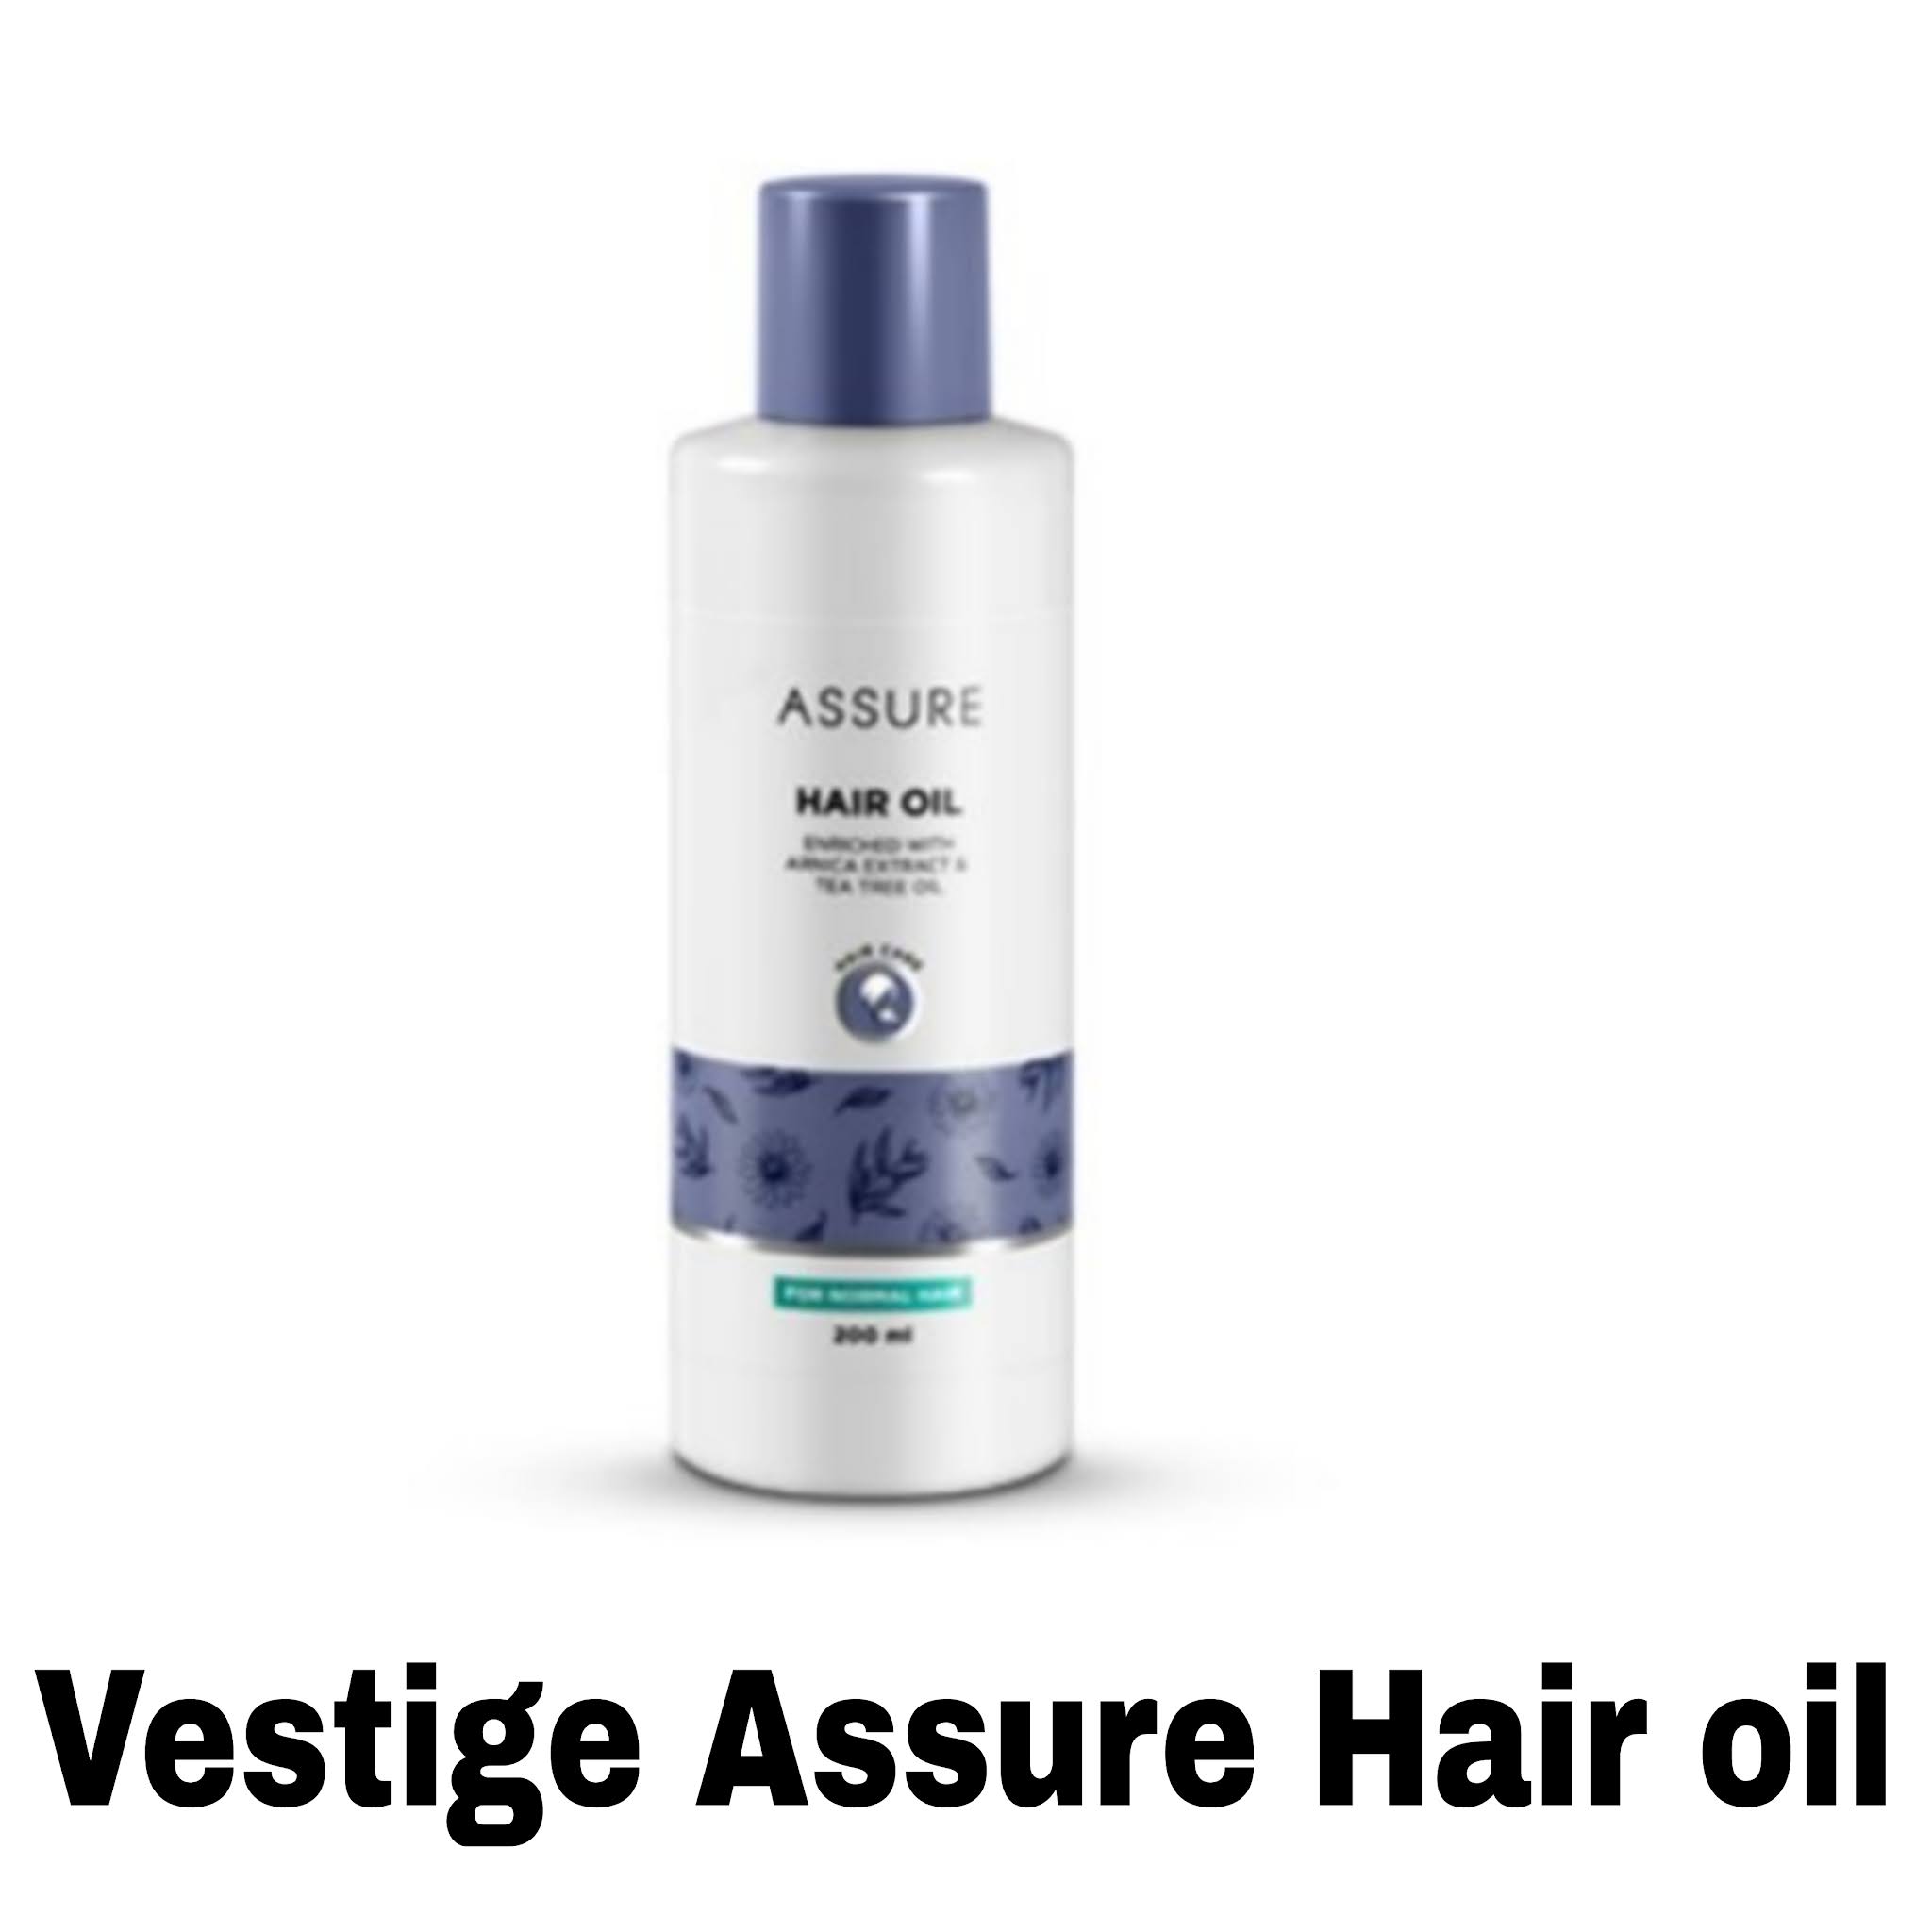 Assure Hair Oil Reviews